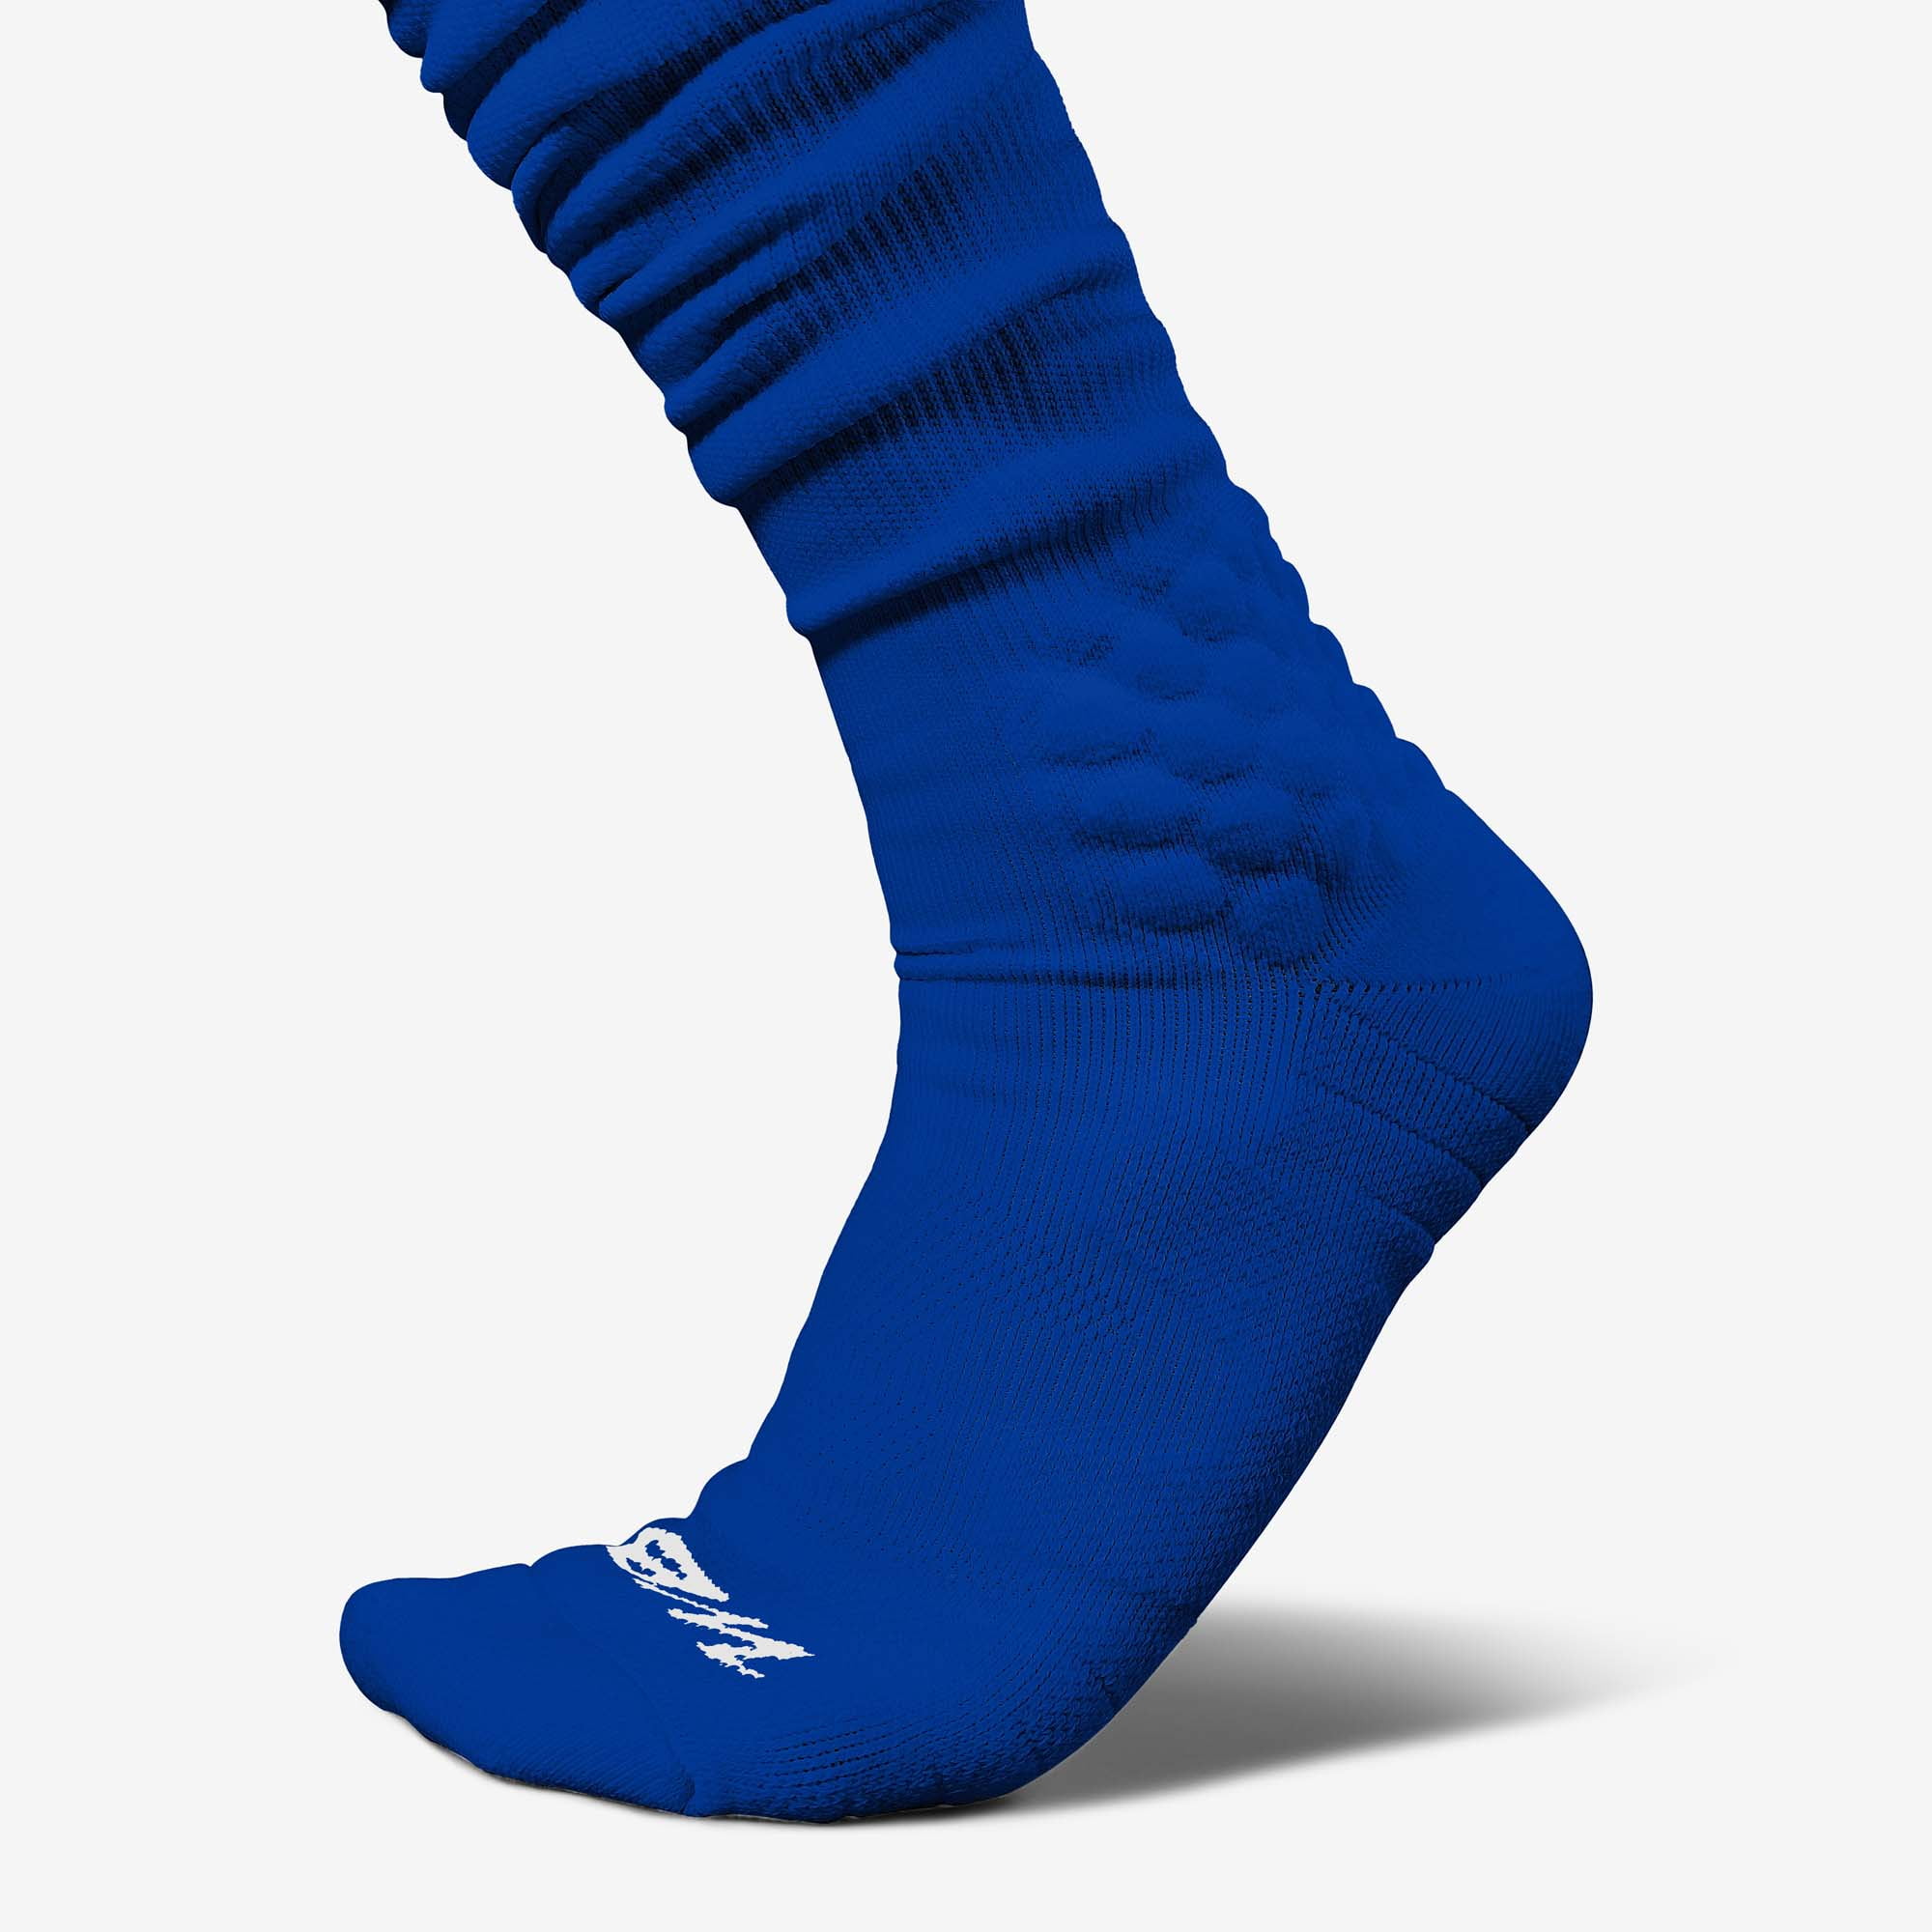 Football socks? Buy Football socks online at Unisport!